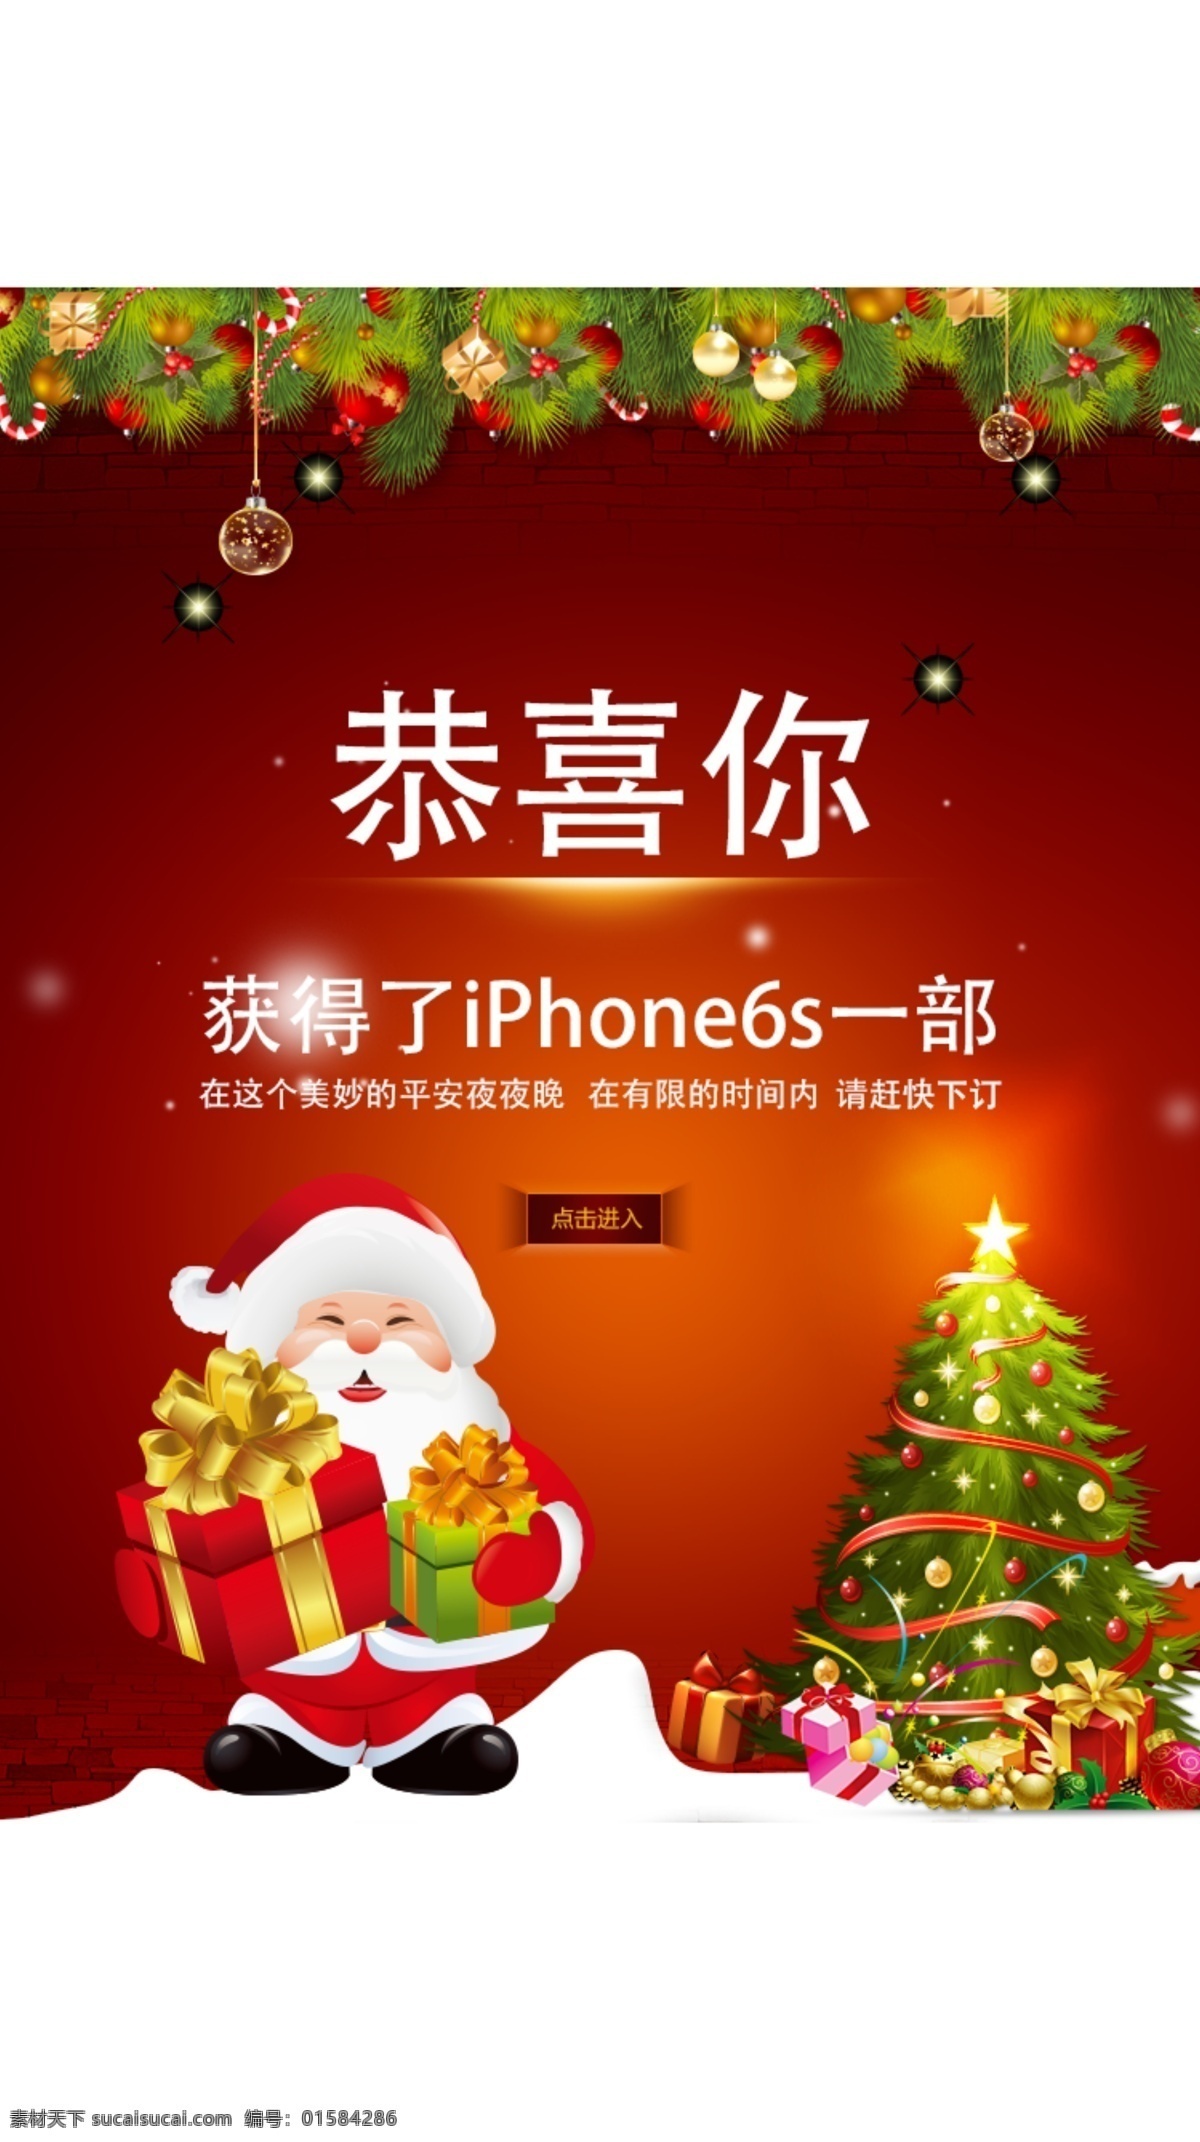 手机页面圣诞 手机页面 圣诞 圣诞老人 圣诞树 圣诞装饰 红色